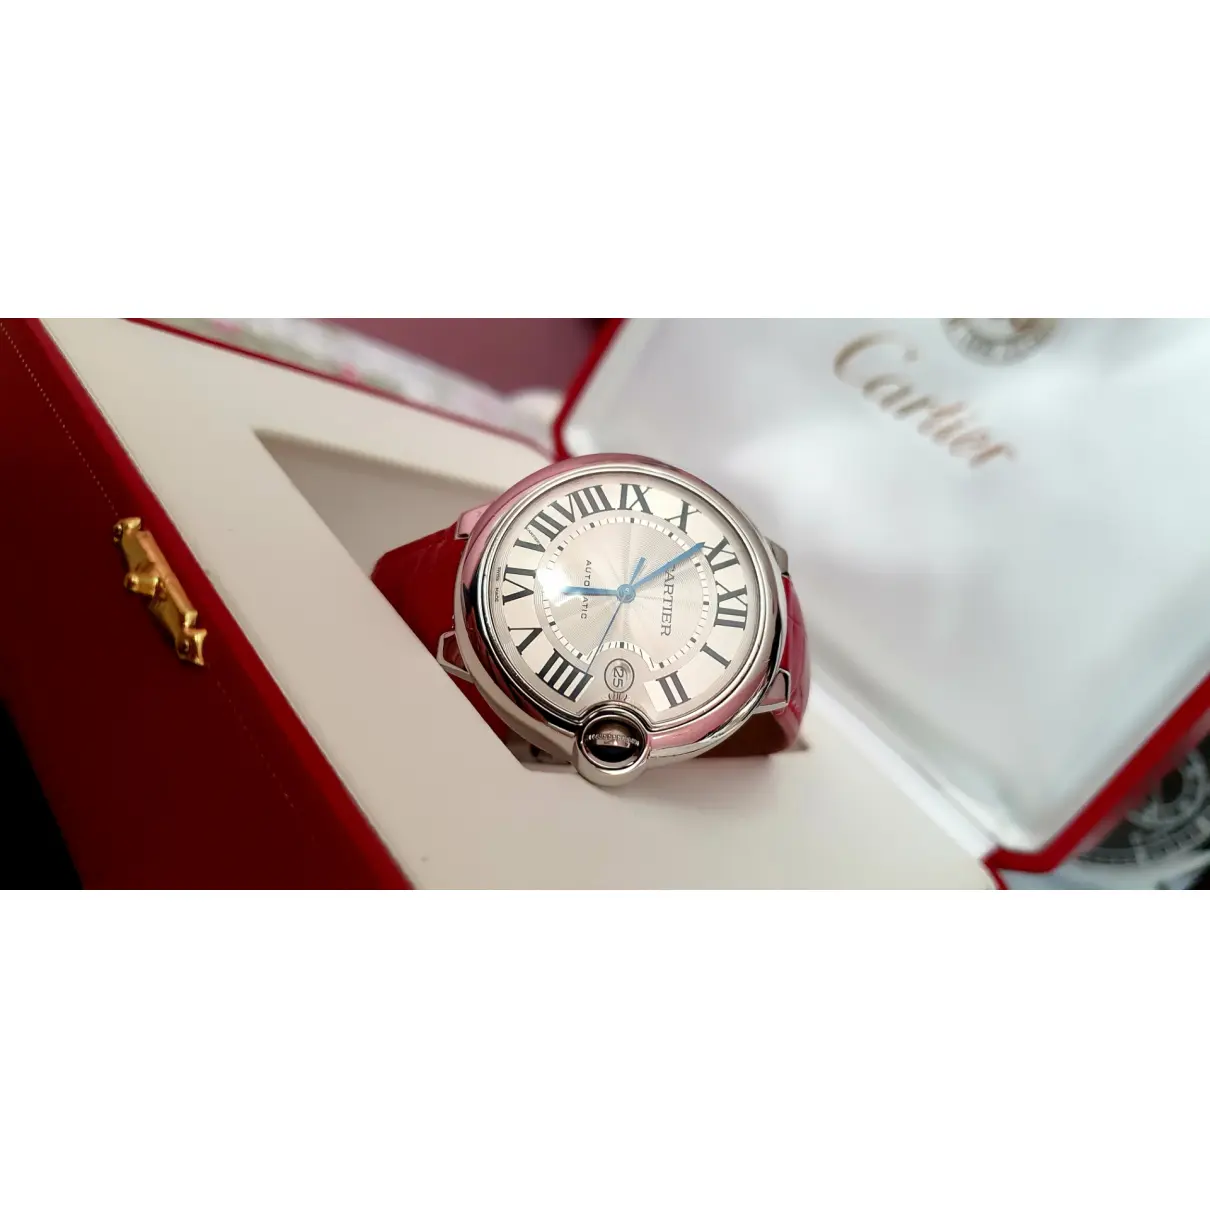 Buy Cartier Ballon bleu watch online